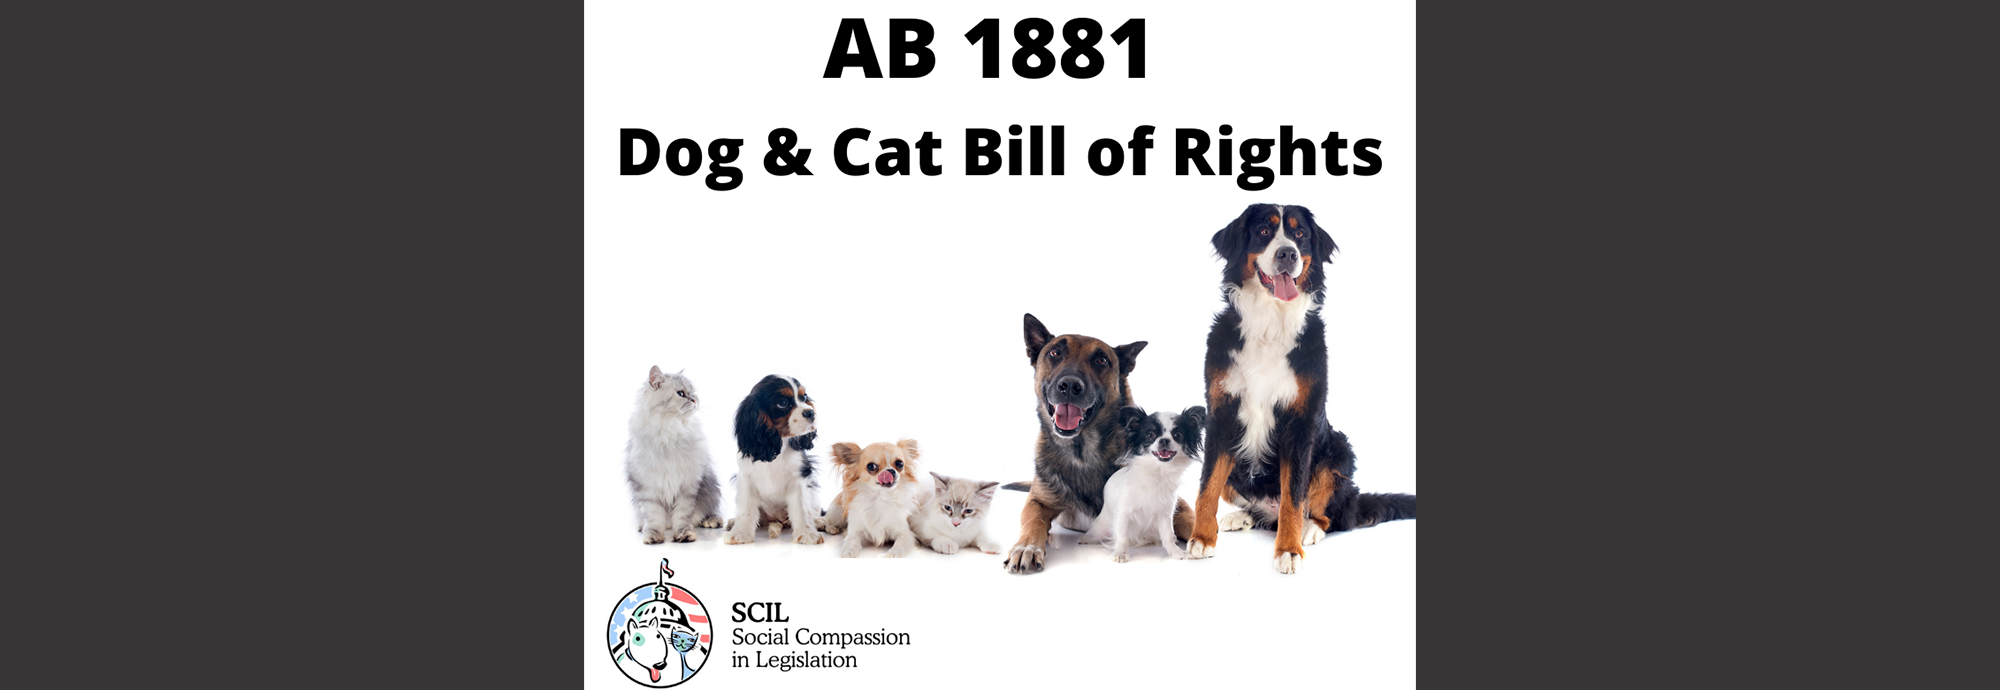 dog-cat-bill-of-rights